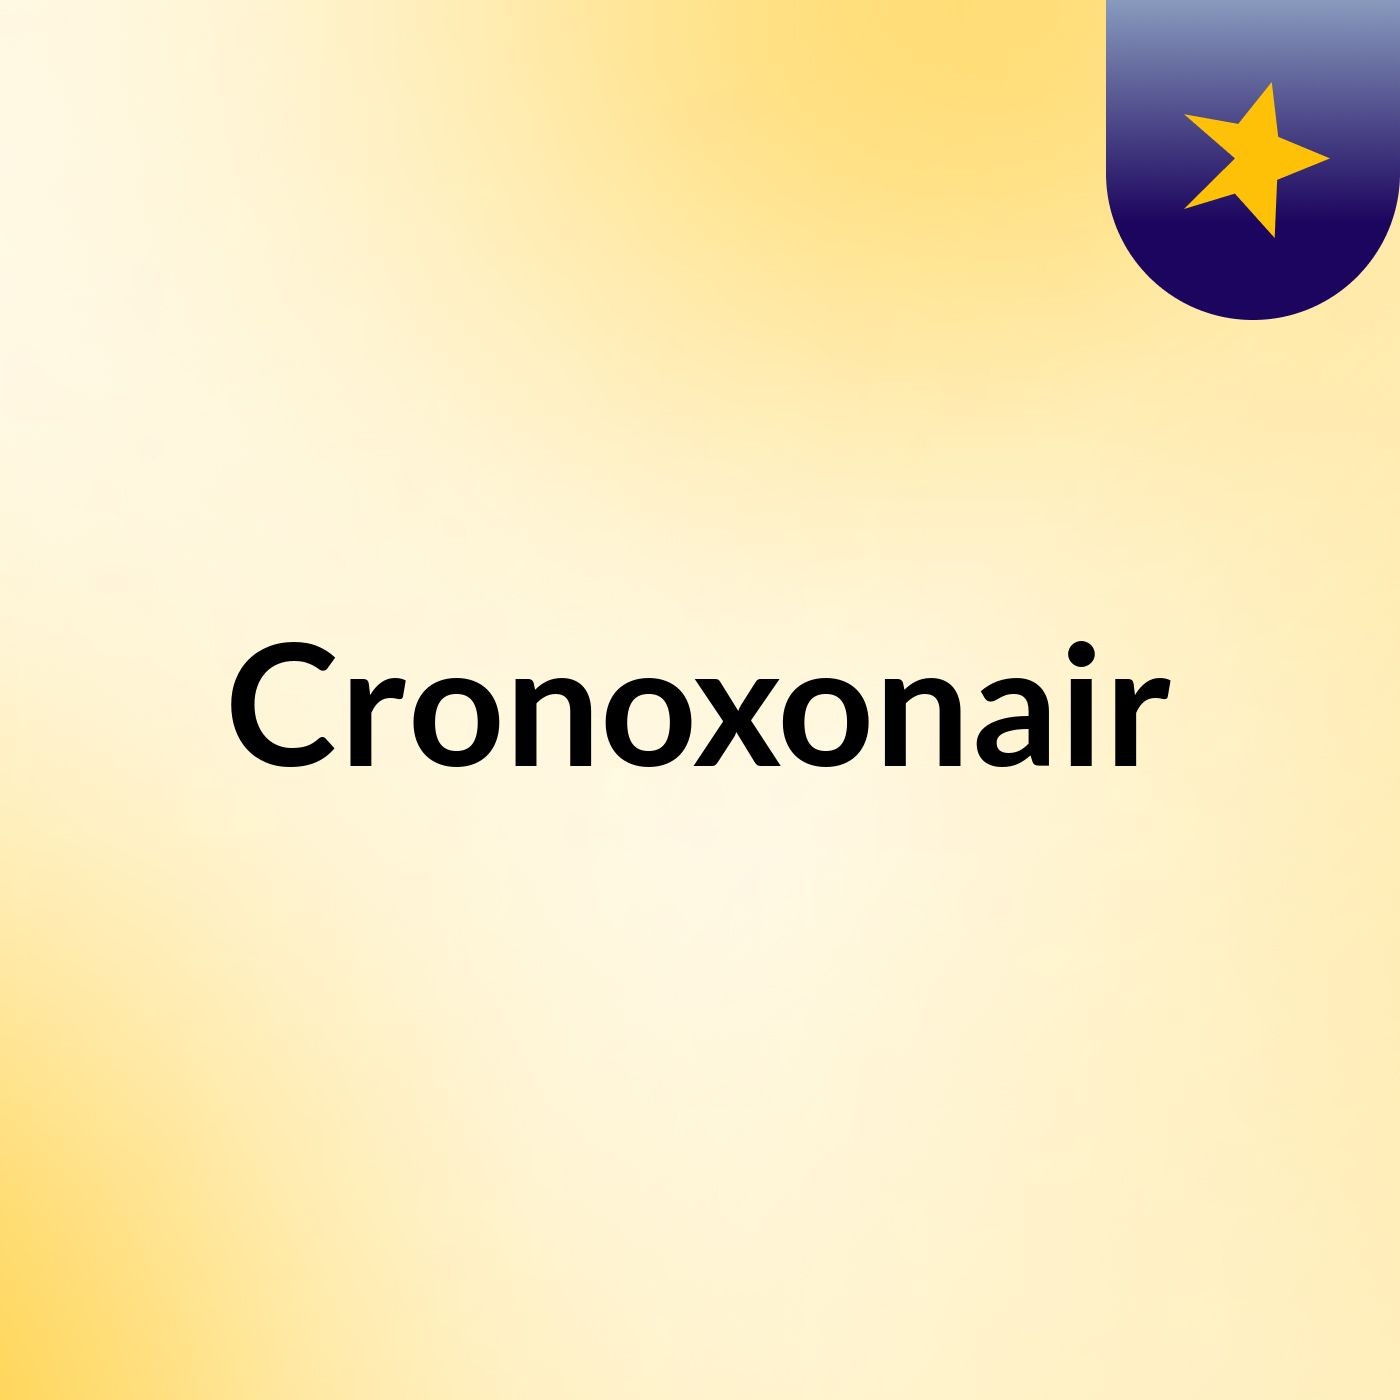 Cronoxonair